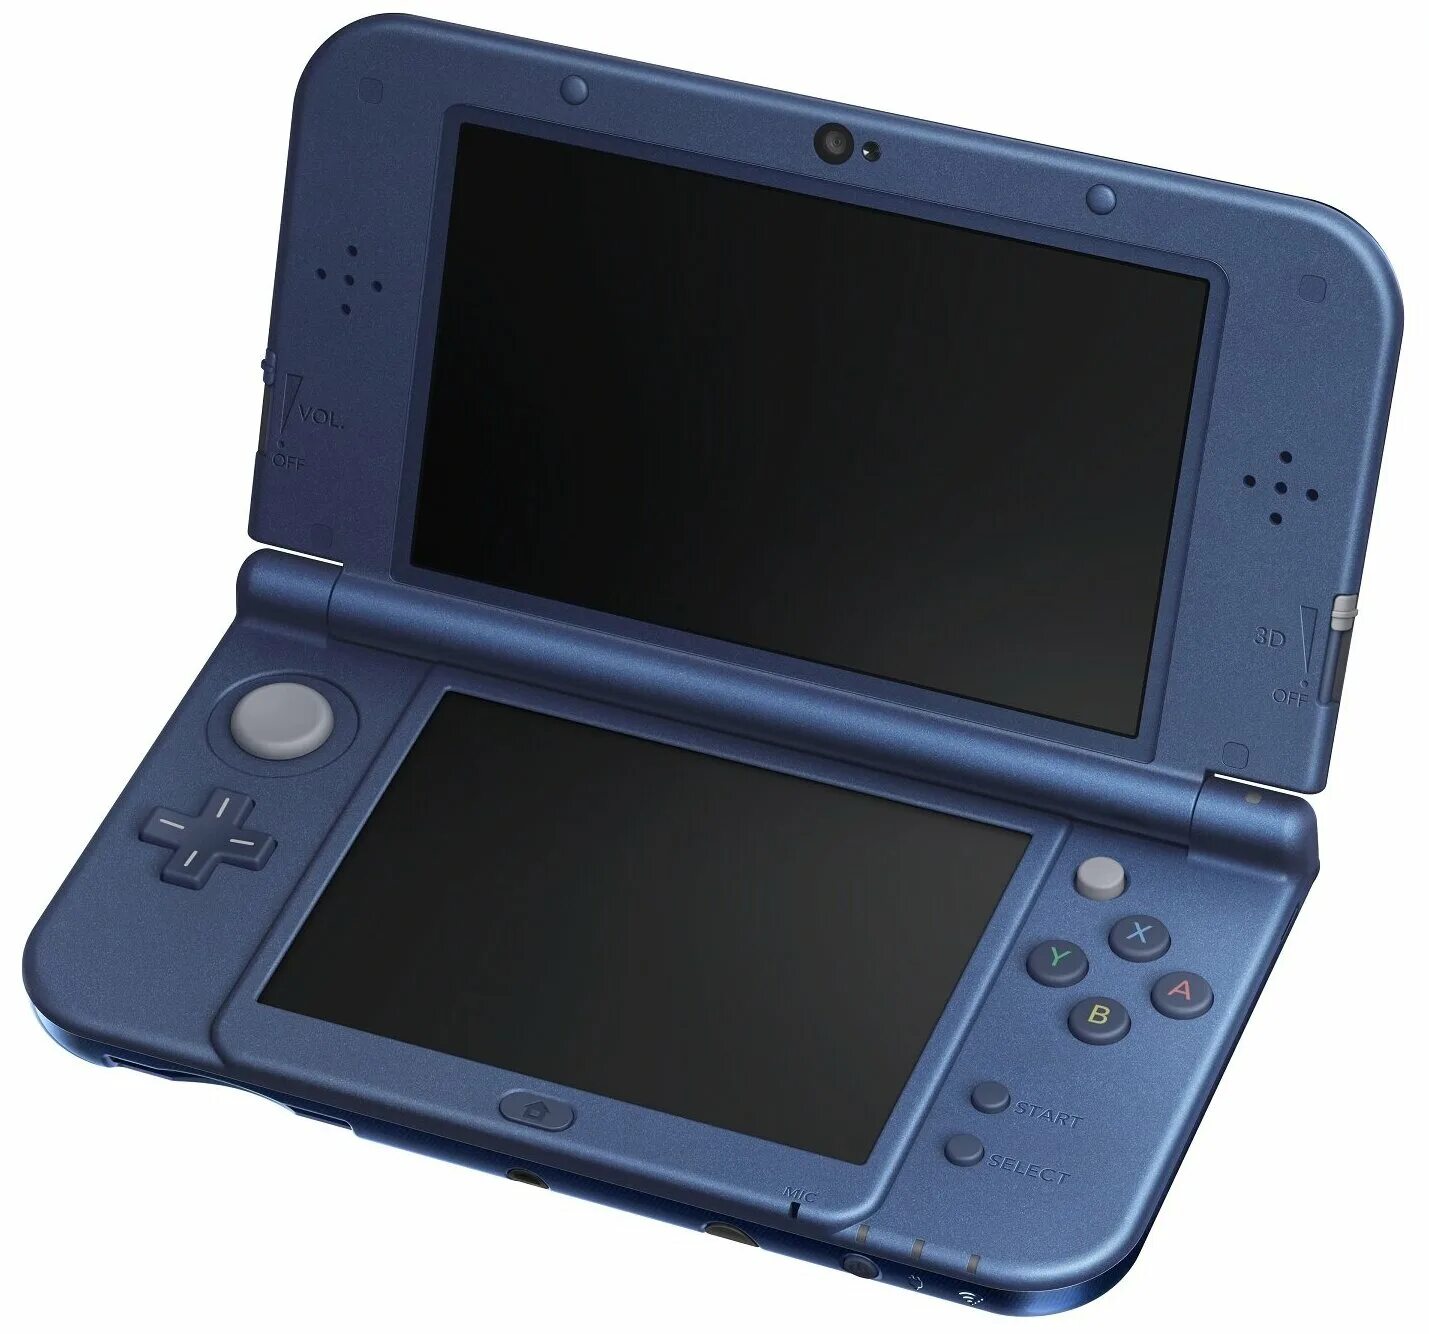 Nds купить. Nintendo 3ds XL. New Nintendo 3ds XL. Игровая приставка Nintendo New 3ds. Nintendo DS 3ds.